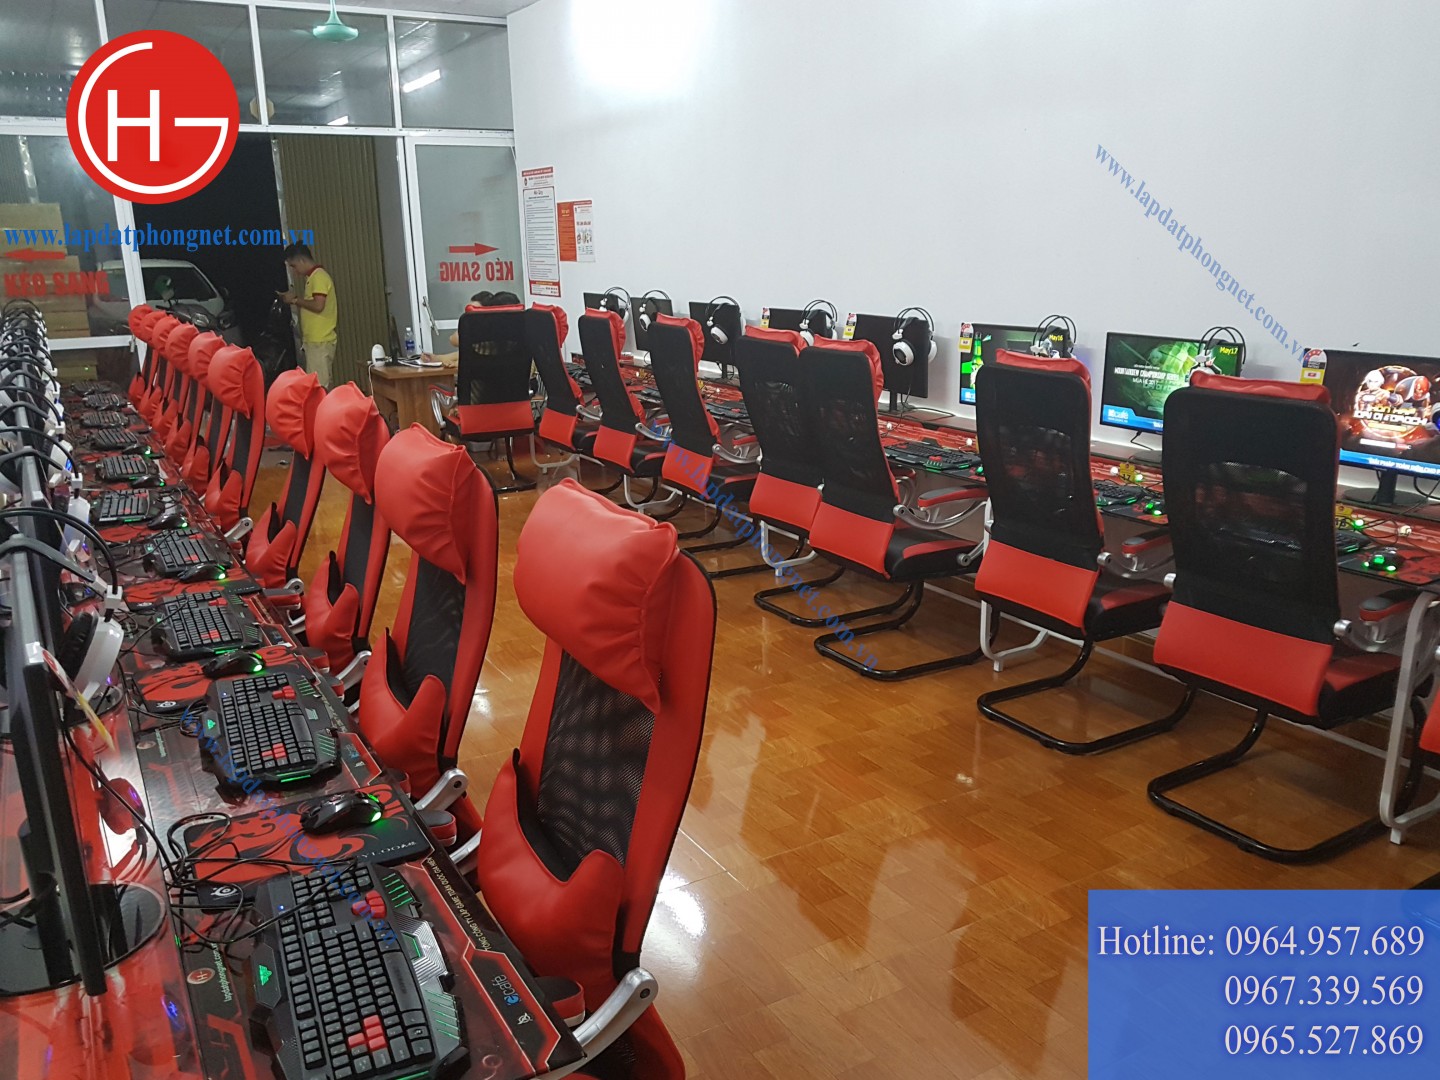 Lắp đặt phòng game giá rẻ cho chị Luyến tại Bắc Ninh